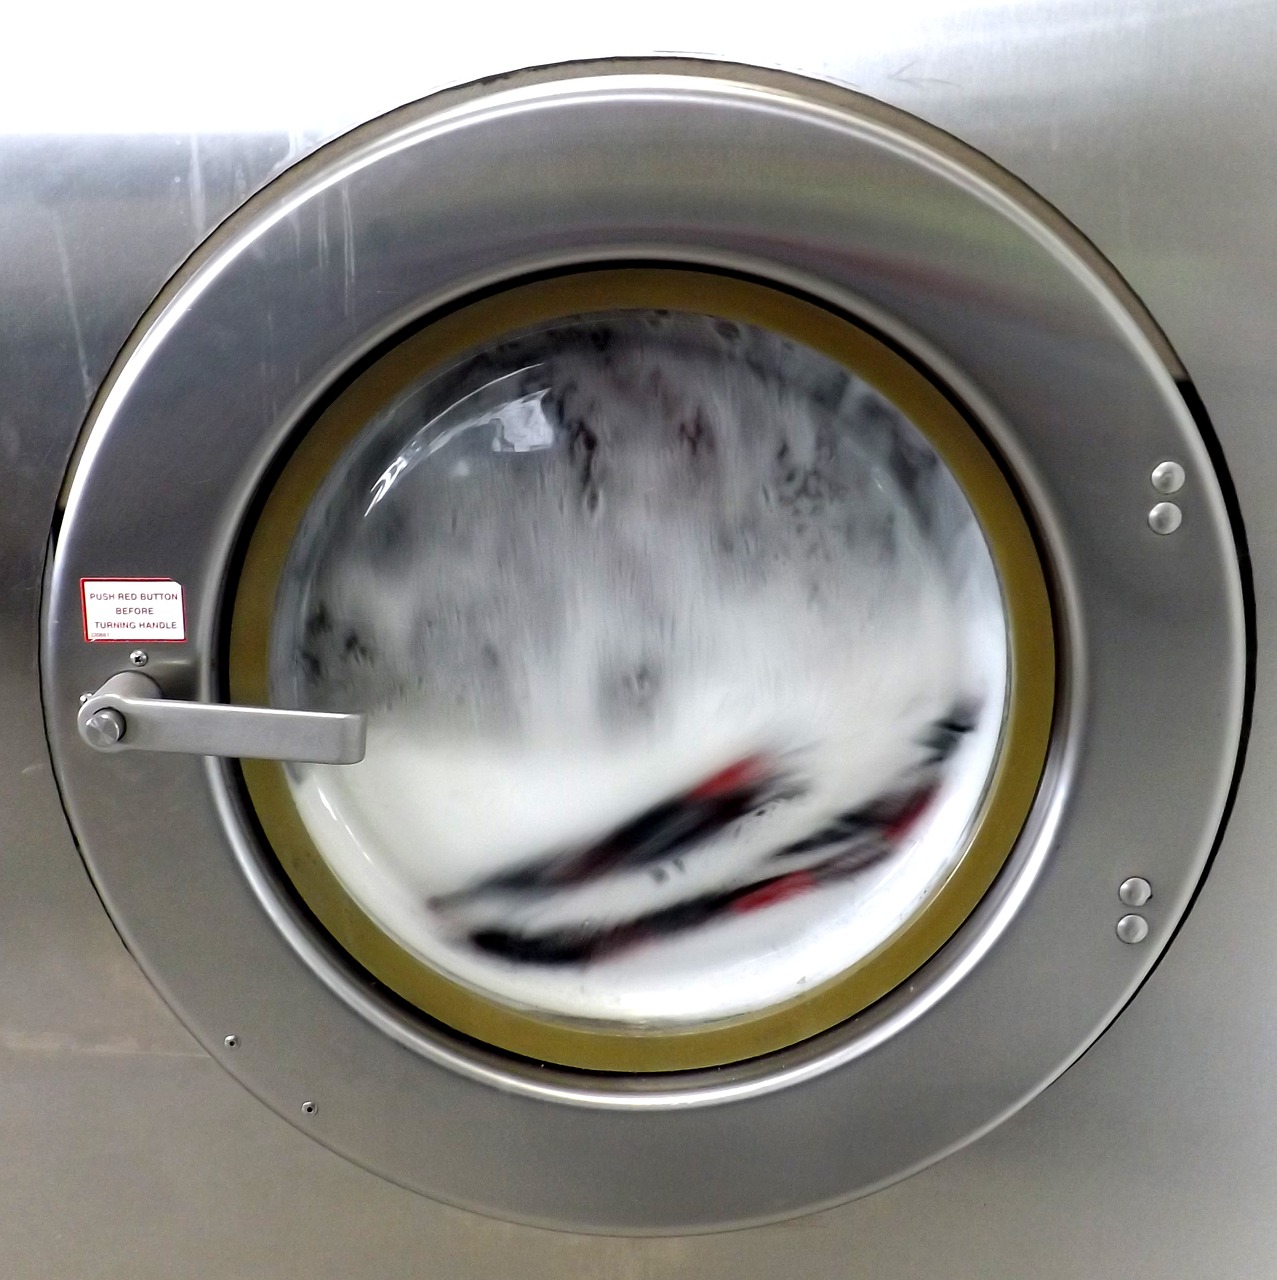 Como calcular a quantidade de sabão na máquina de lavar?